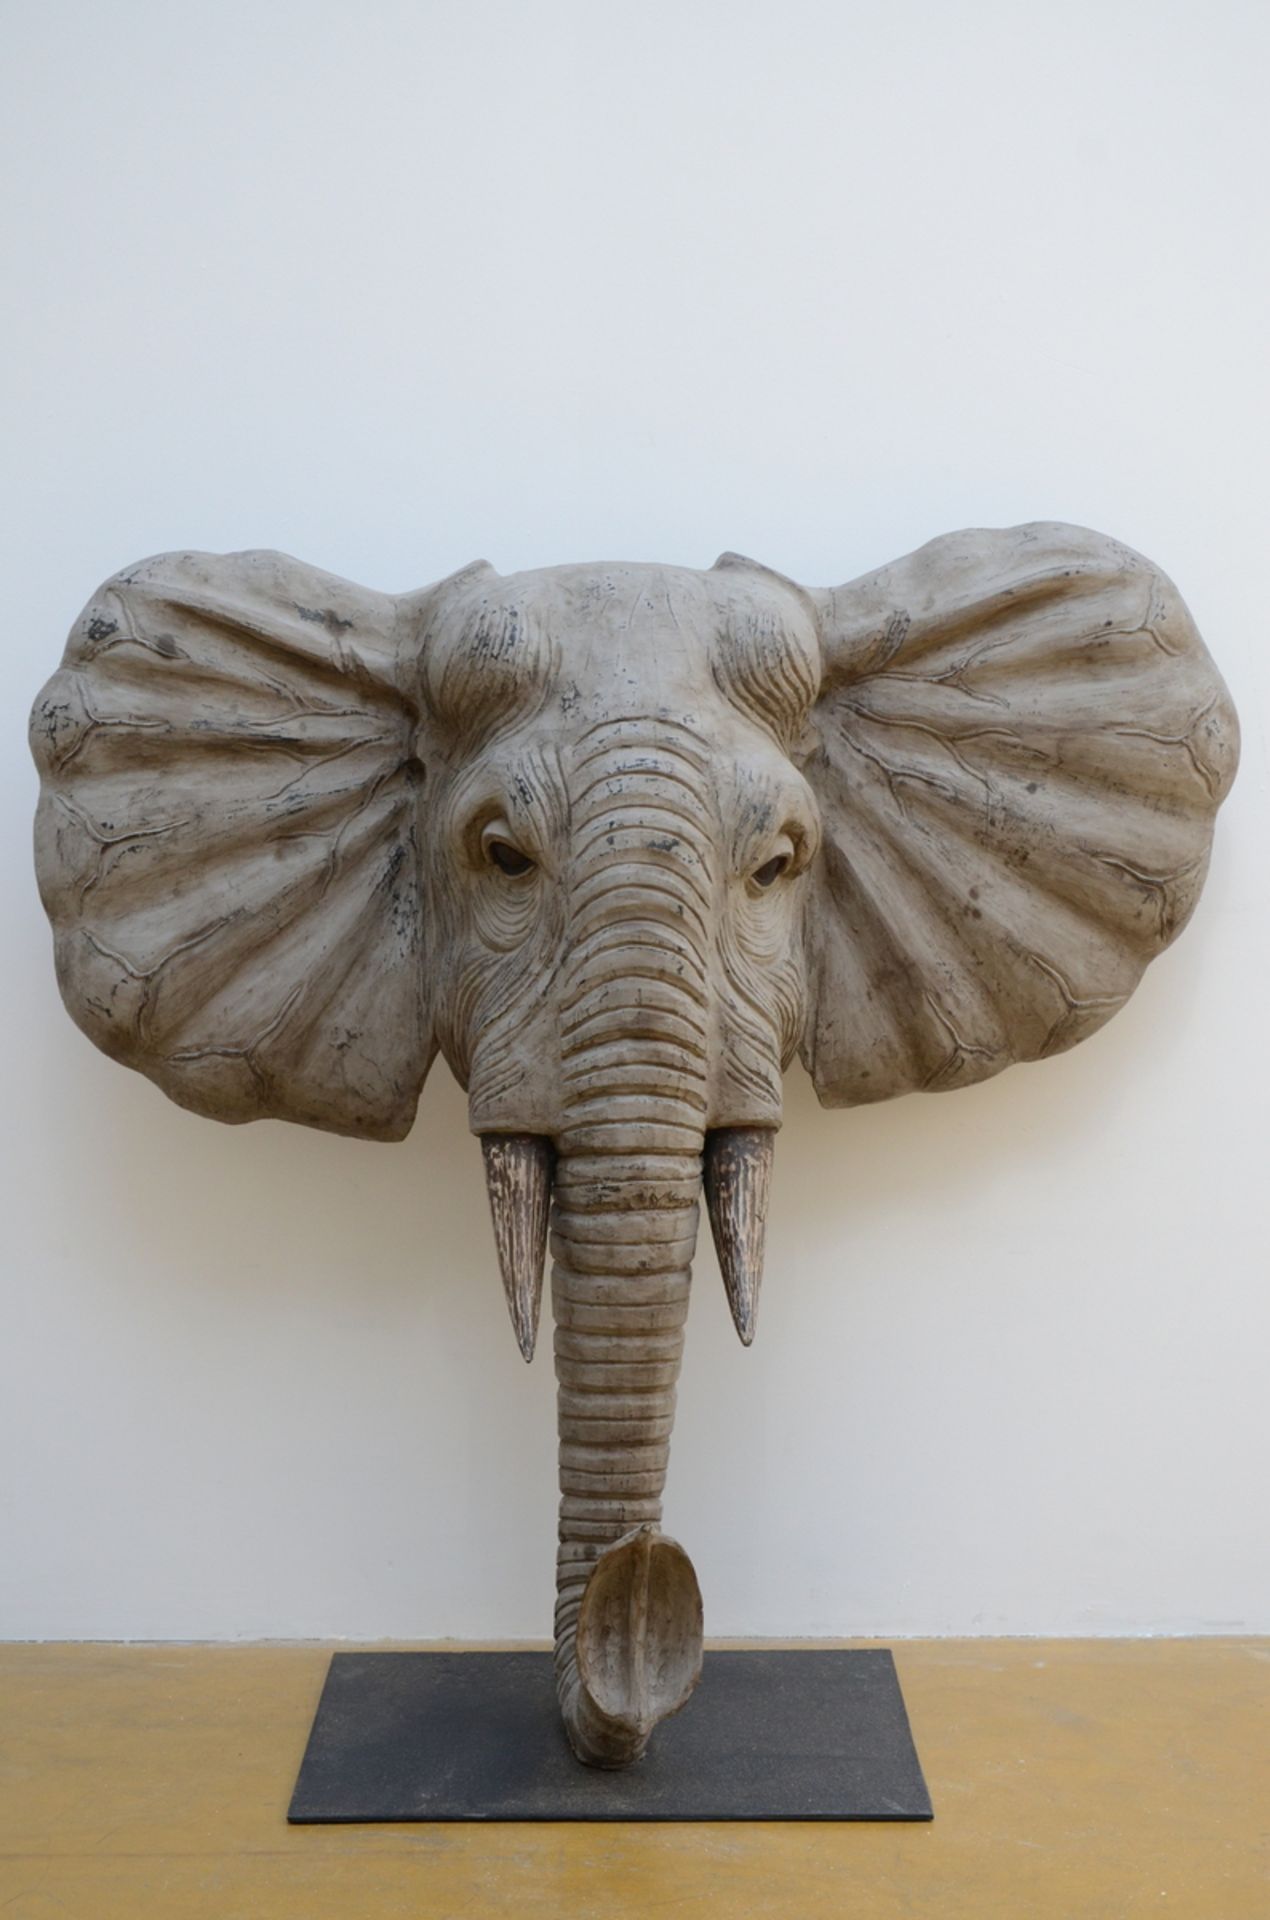 Sculpture of an elephant in wood, modern (99x104x40cm)